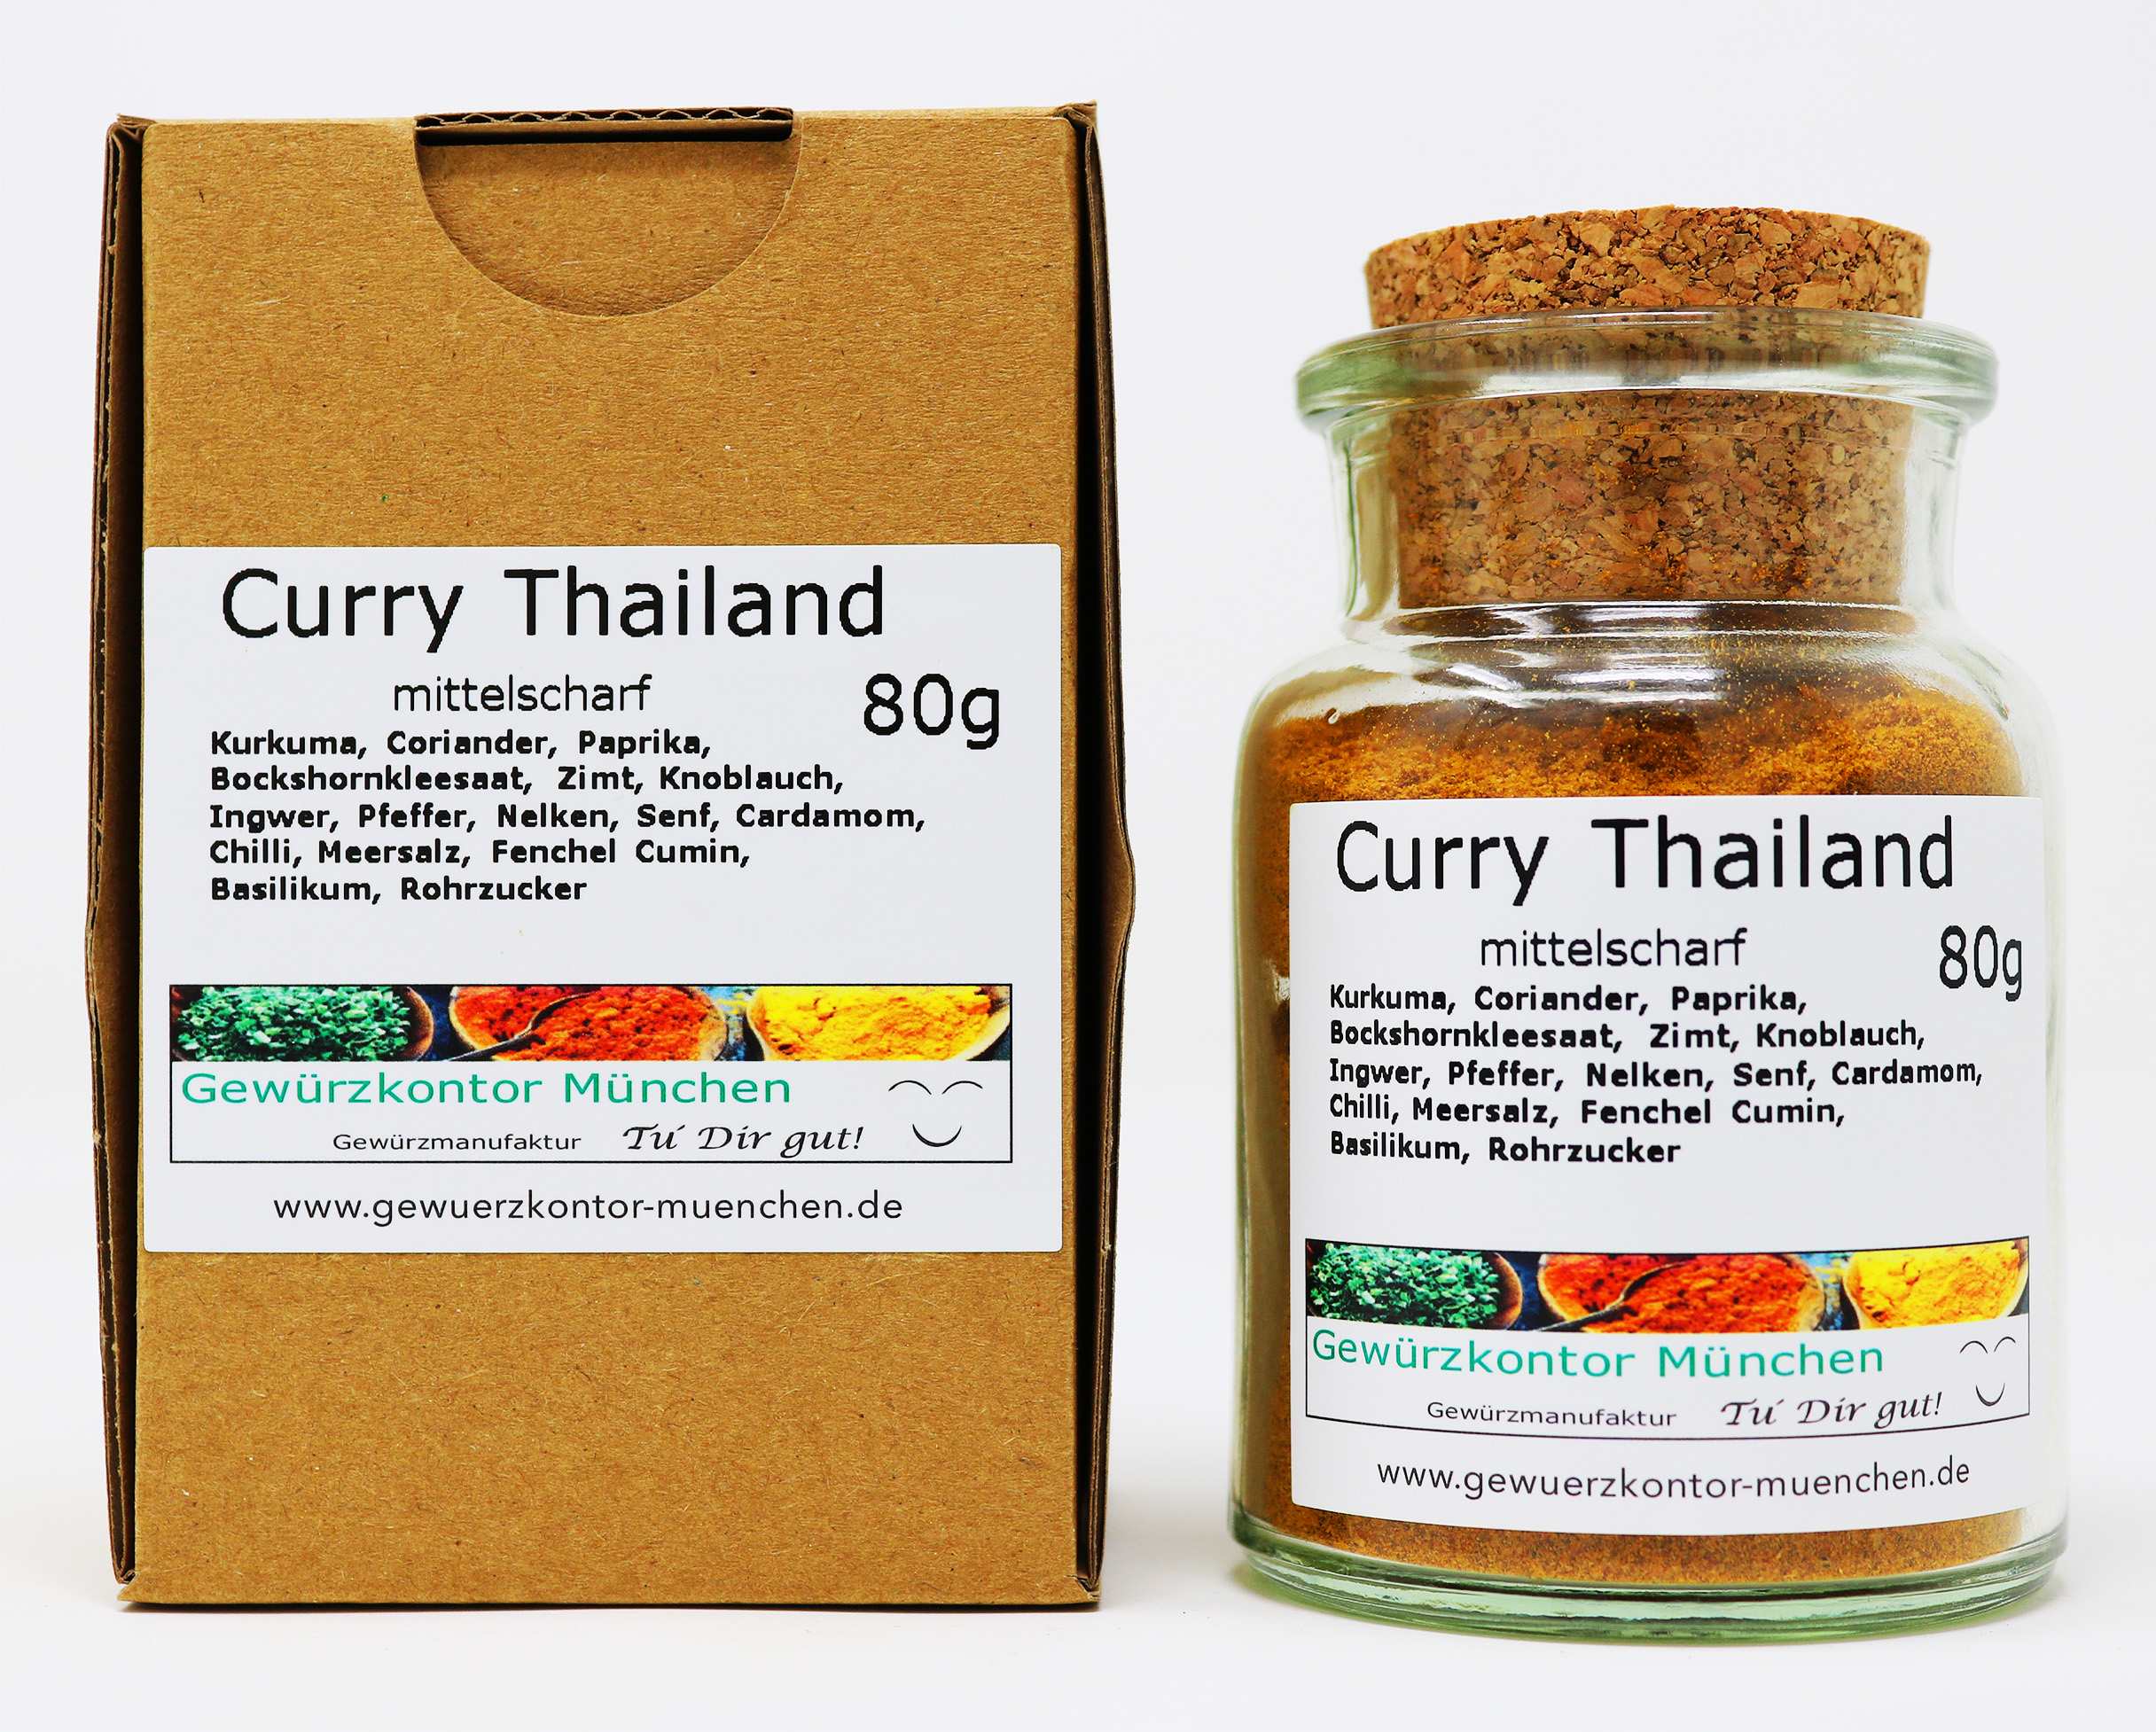 Curry Thailand, mittelscharf 70g im Glas